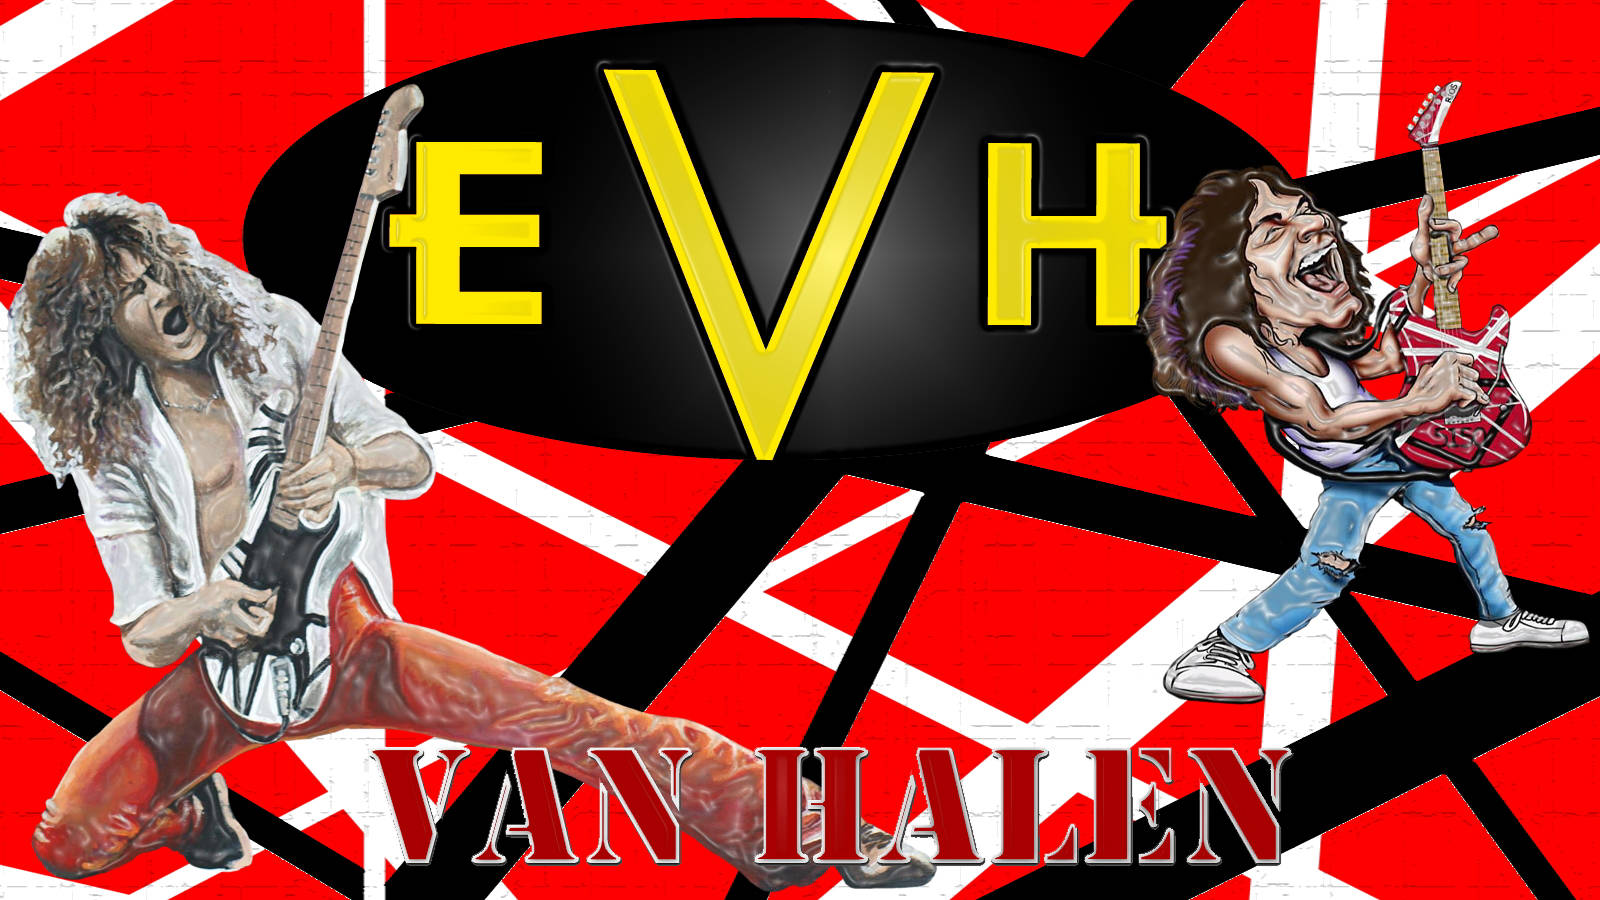 Van Halen Rock Band Caricature Wallpaper